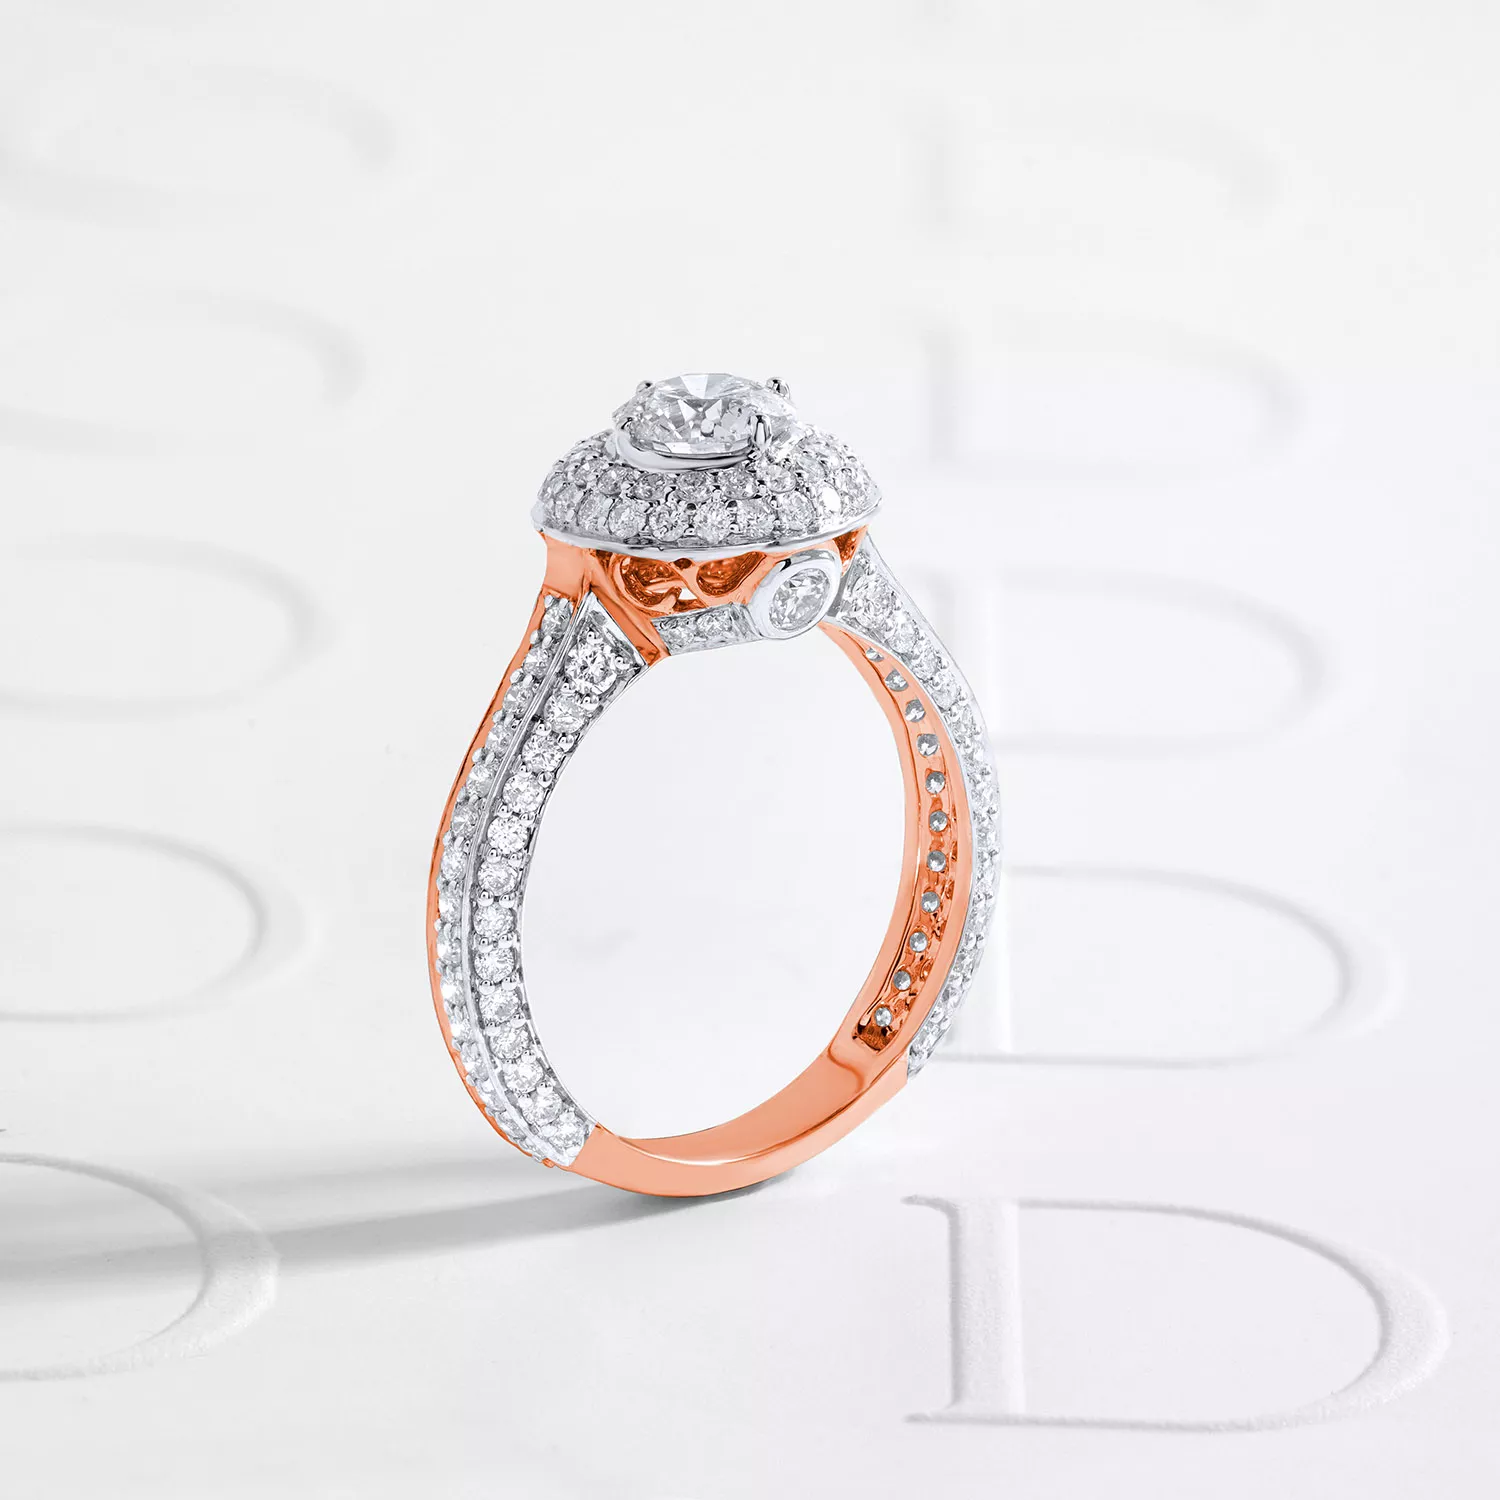 主鑽配上許多碎鑽的鑽石戒指款式，散發出極致的豪奢感。